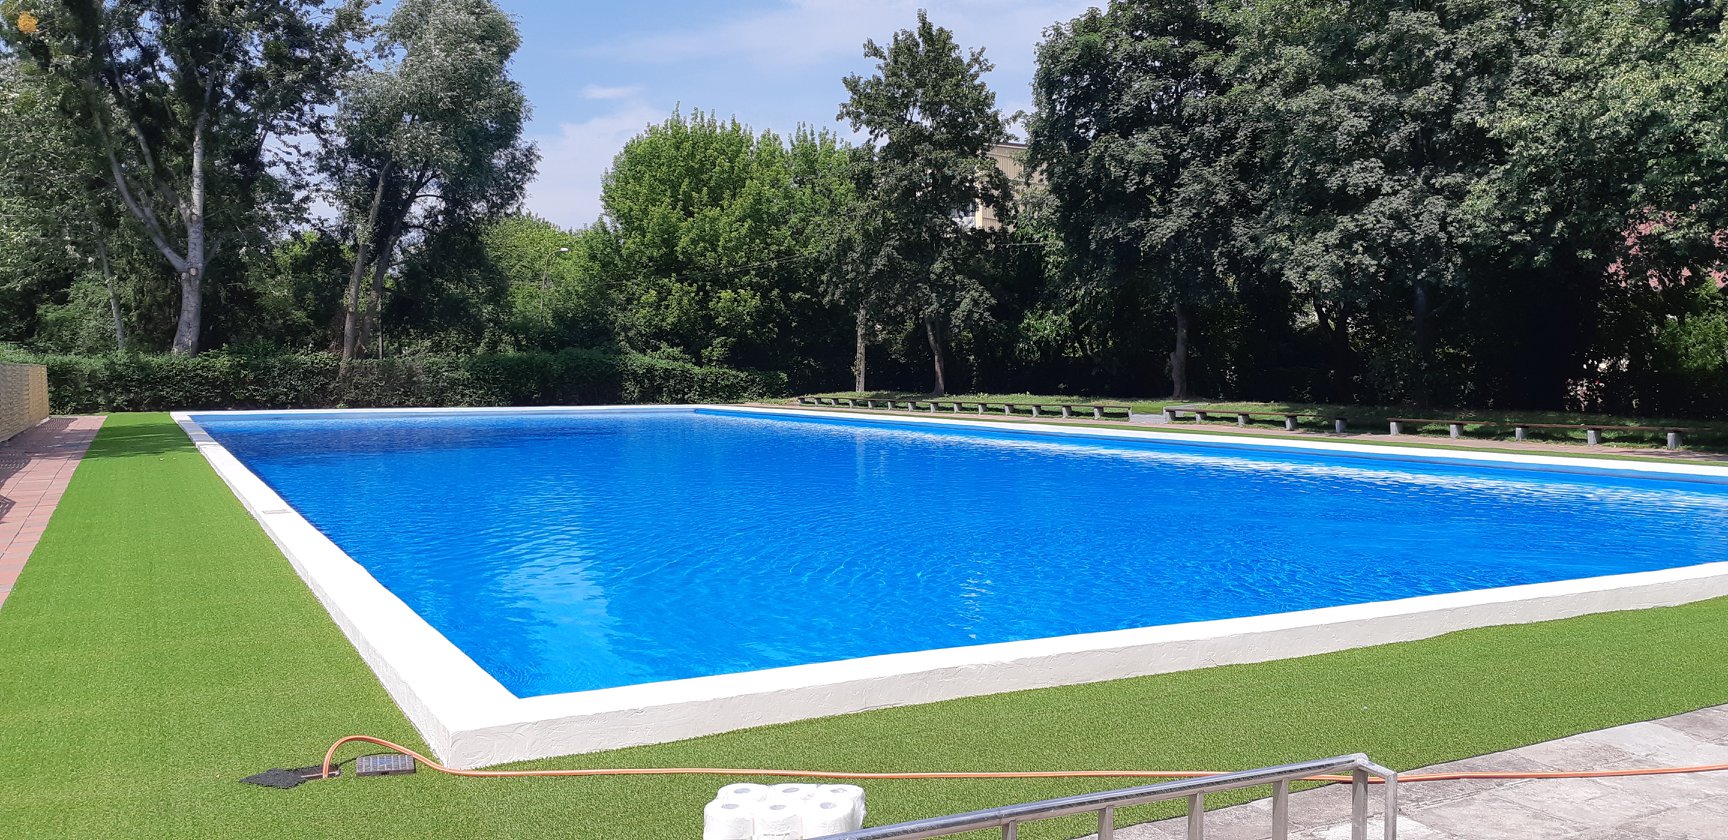 Już w sobotę otwarcie milanowskiego basenu! - Grodzisk News